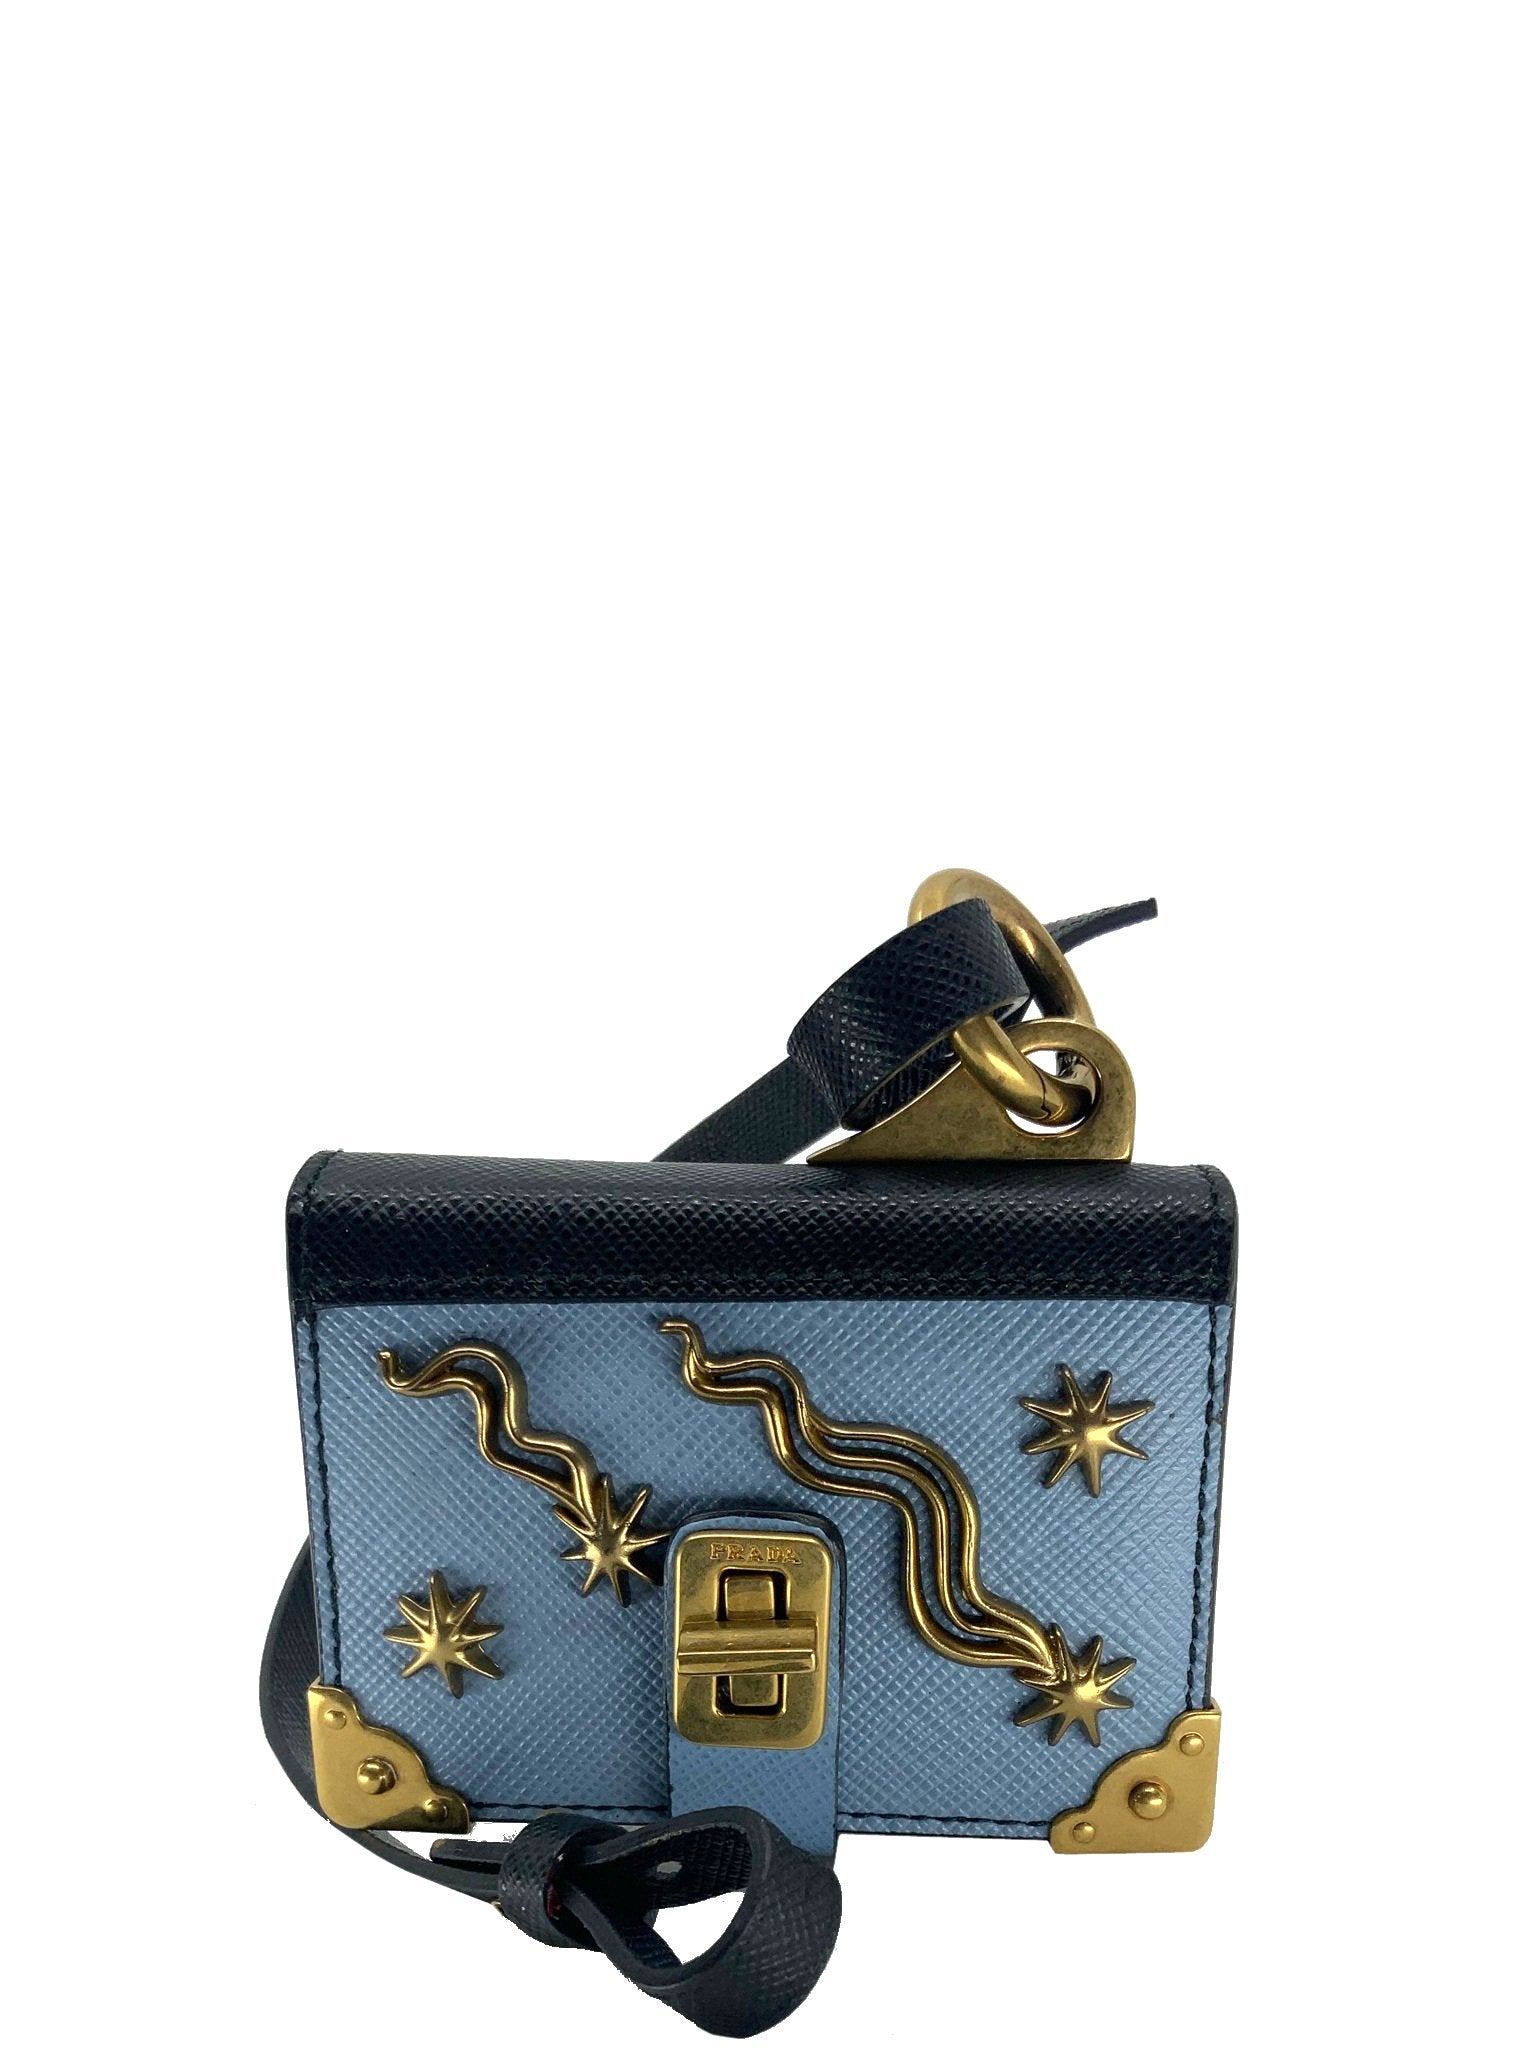 Prada Saffiano Leather Trick Note Book Bag Charm - Consigned Designs